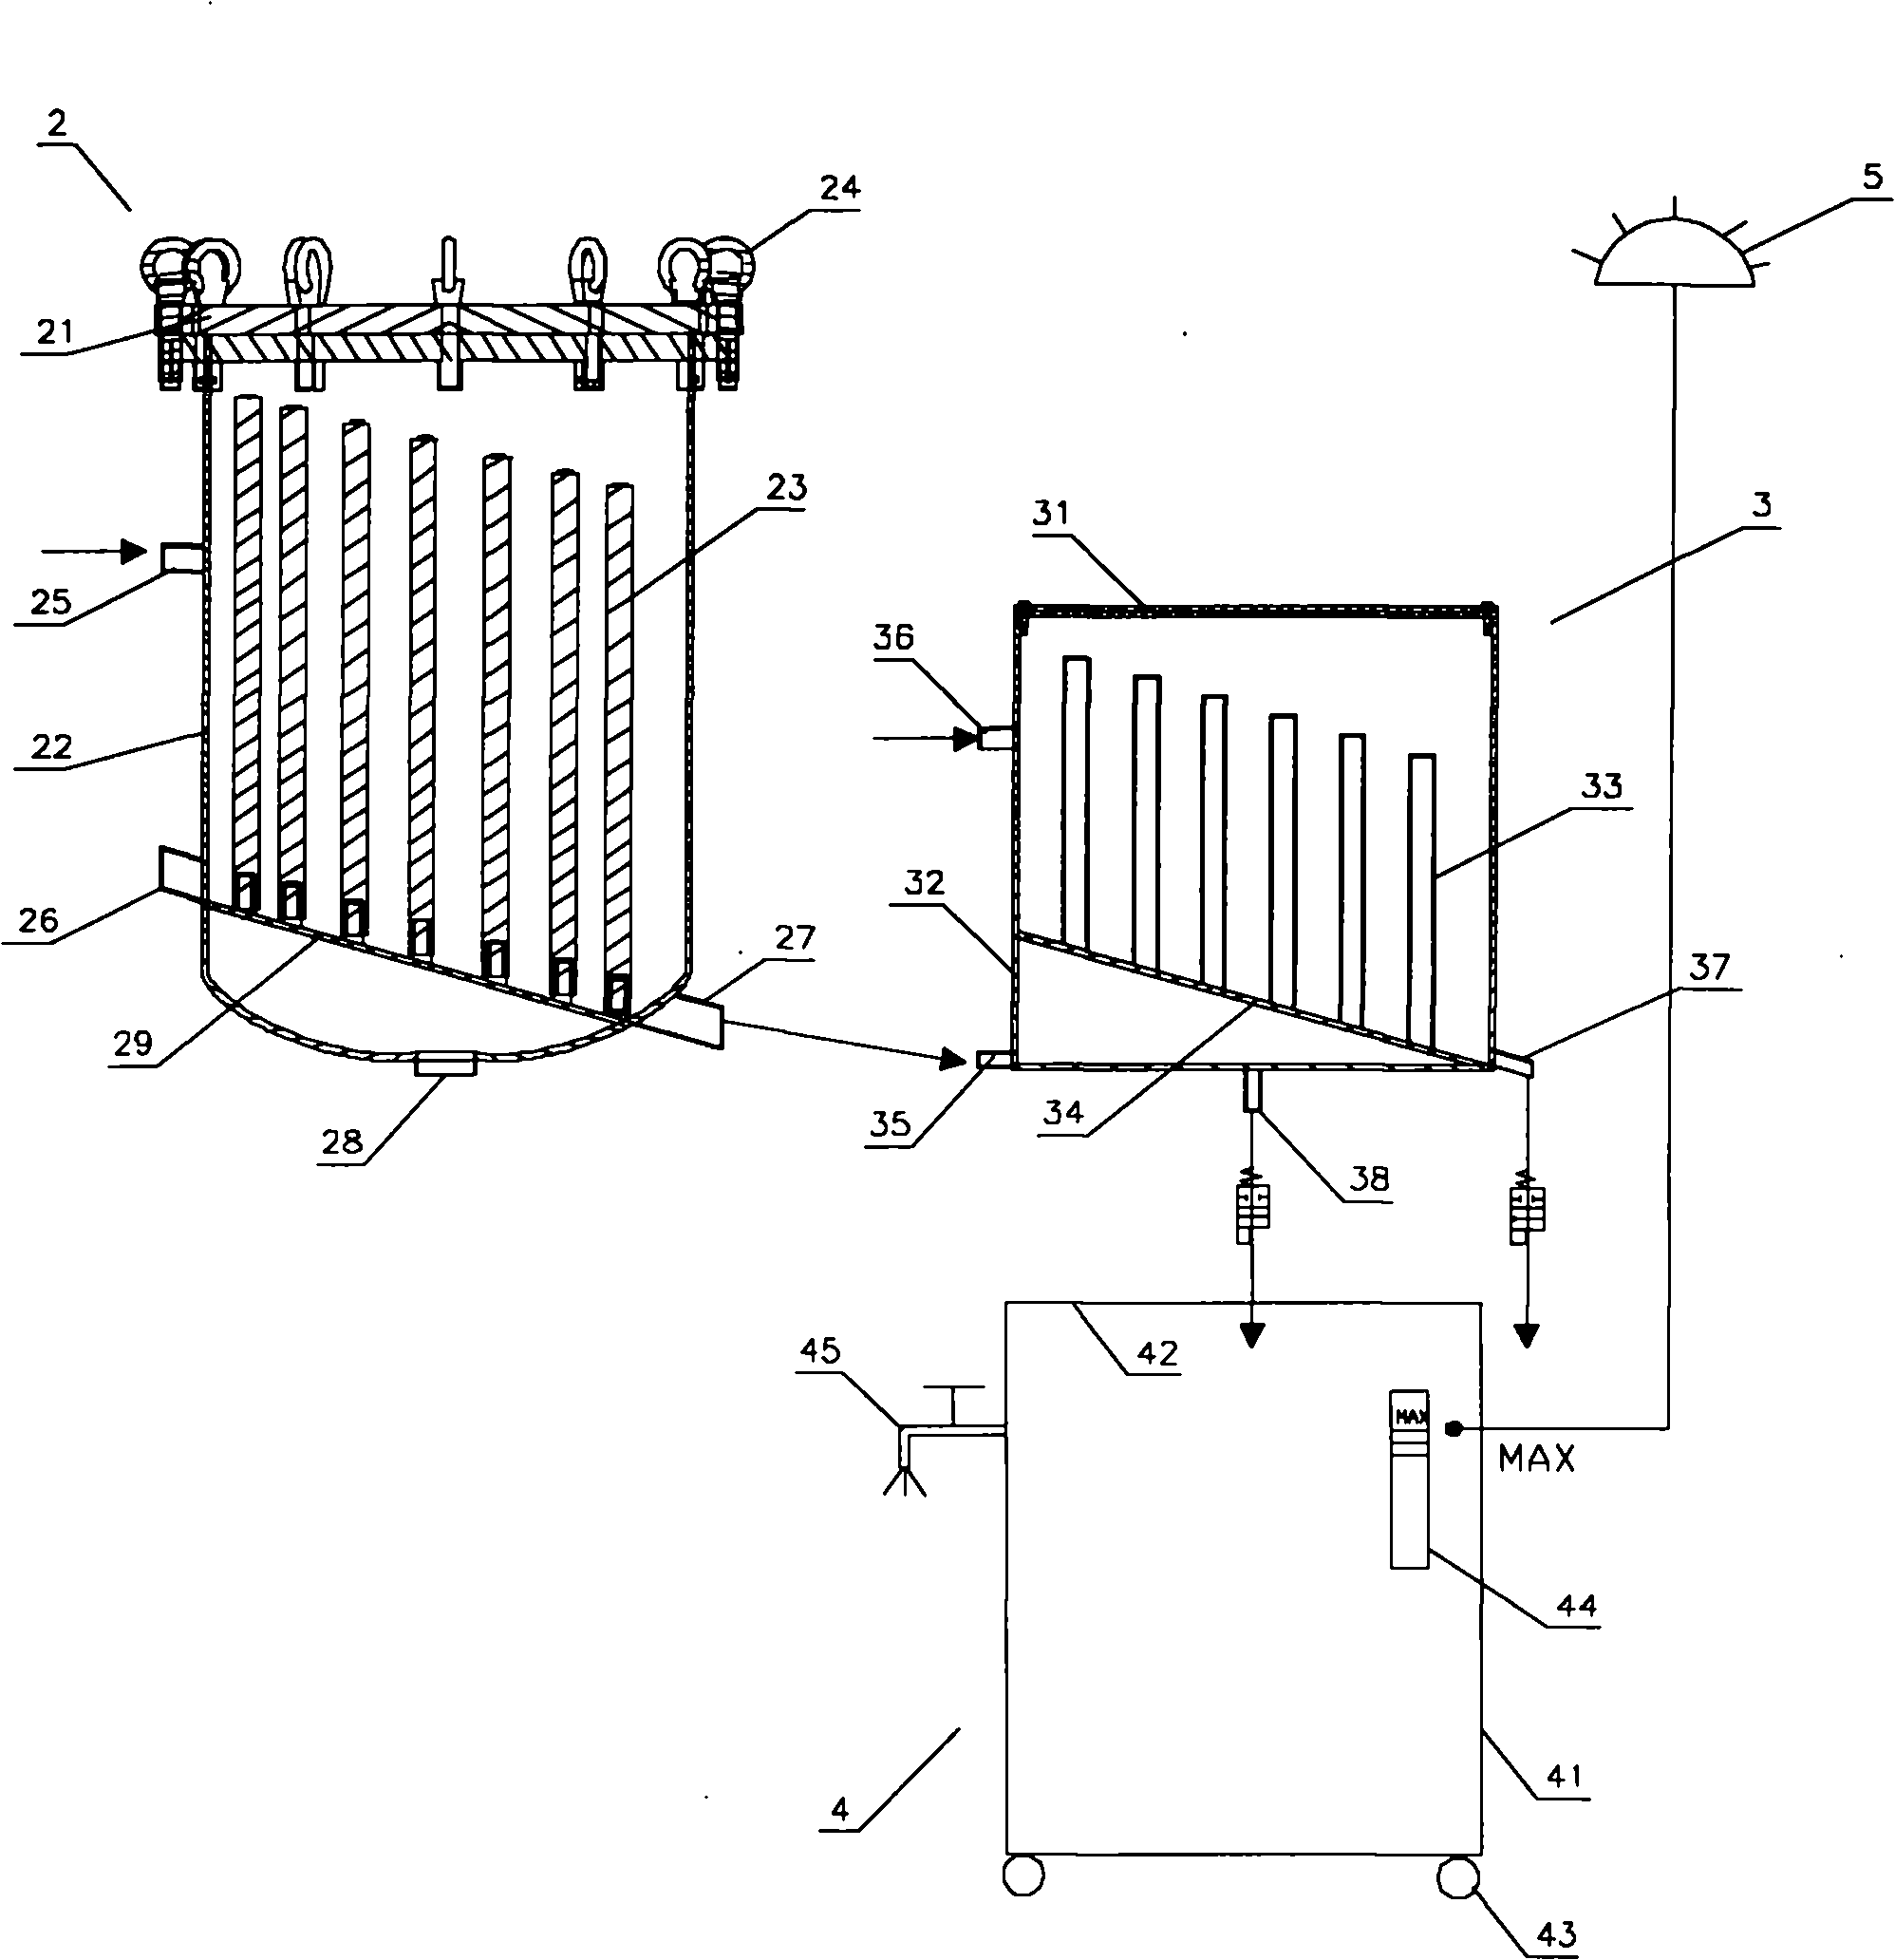 Filtering and slag-discharging system